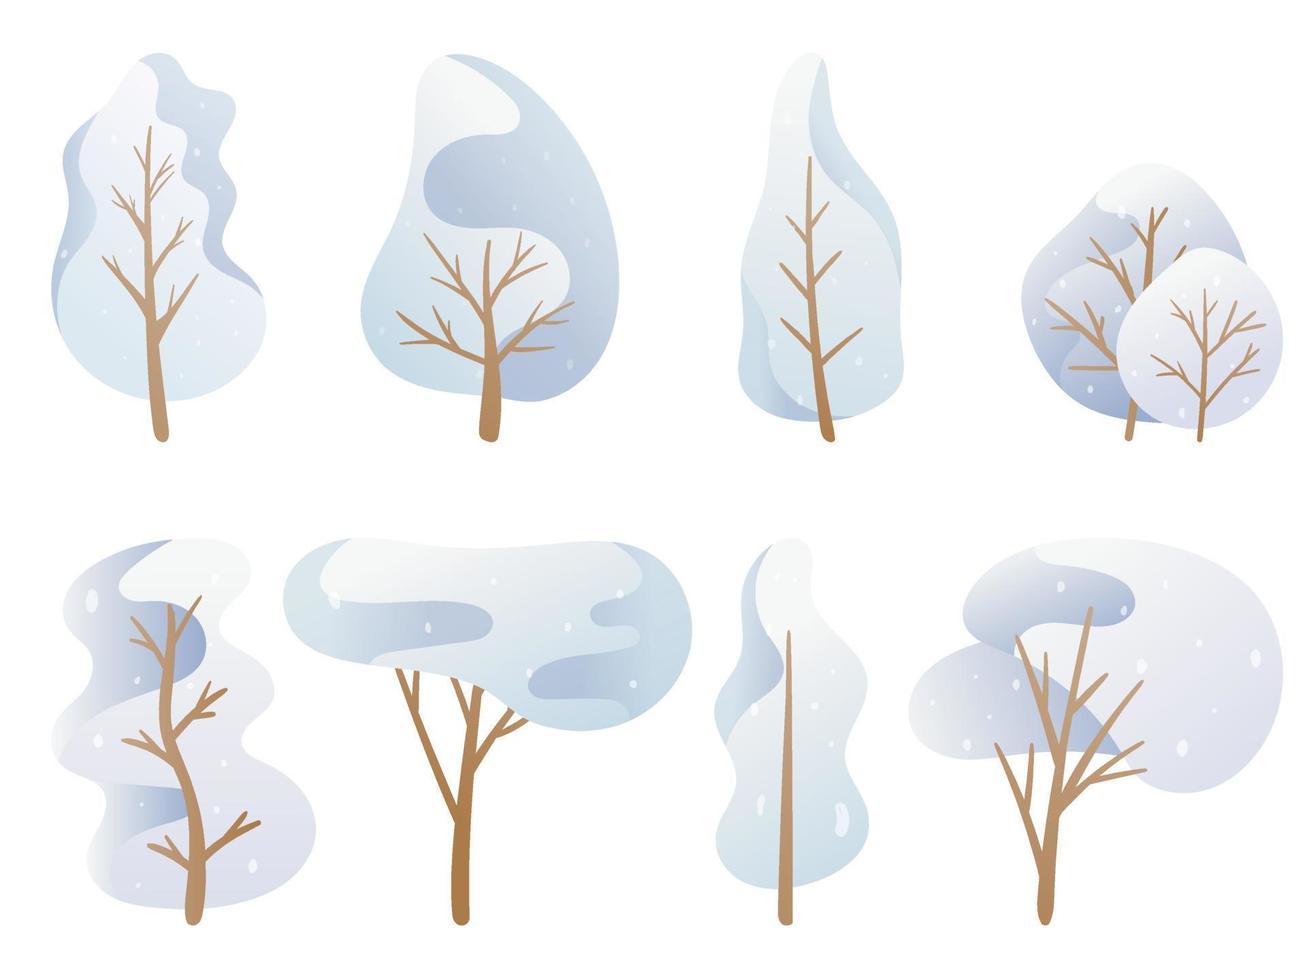 ilustración vectorial un conjunto de imágenes de garabatos. árboles de dibujos animados en una paleta azul, corona de invierno cubierta de nieve de diferentes formas. decoración de fondo vector